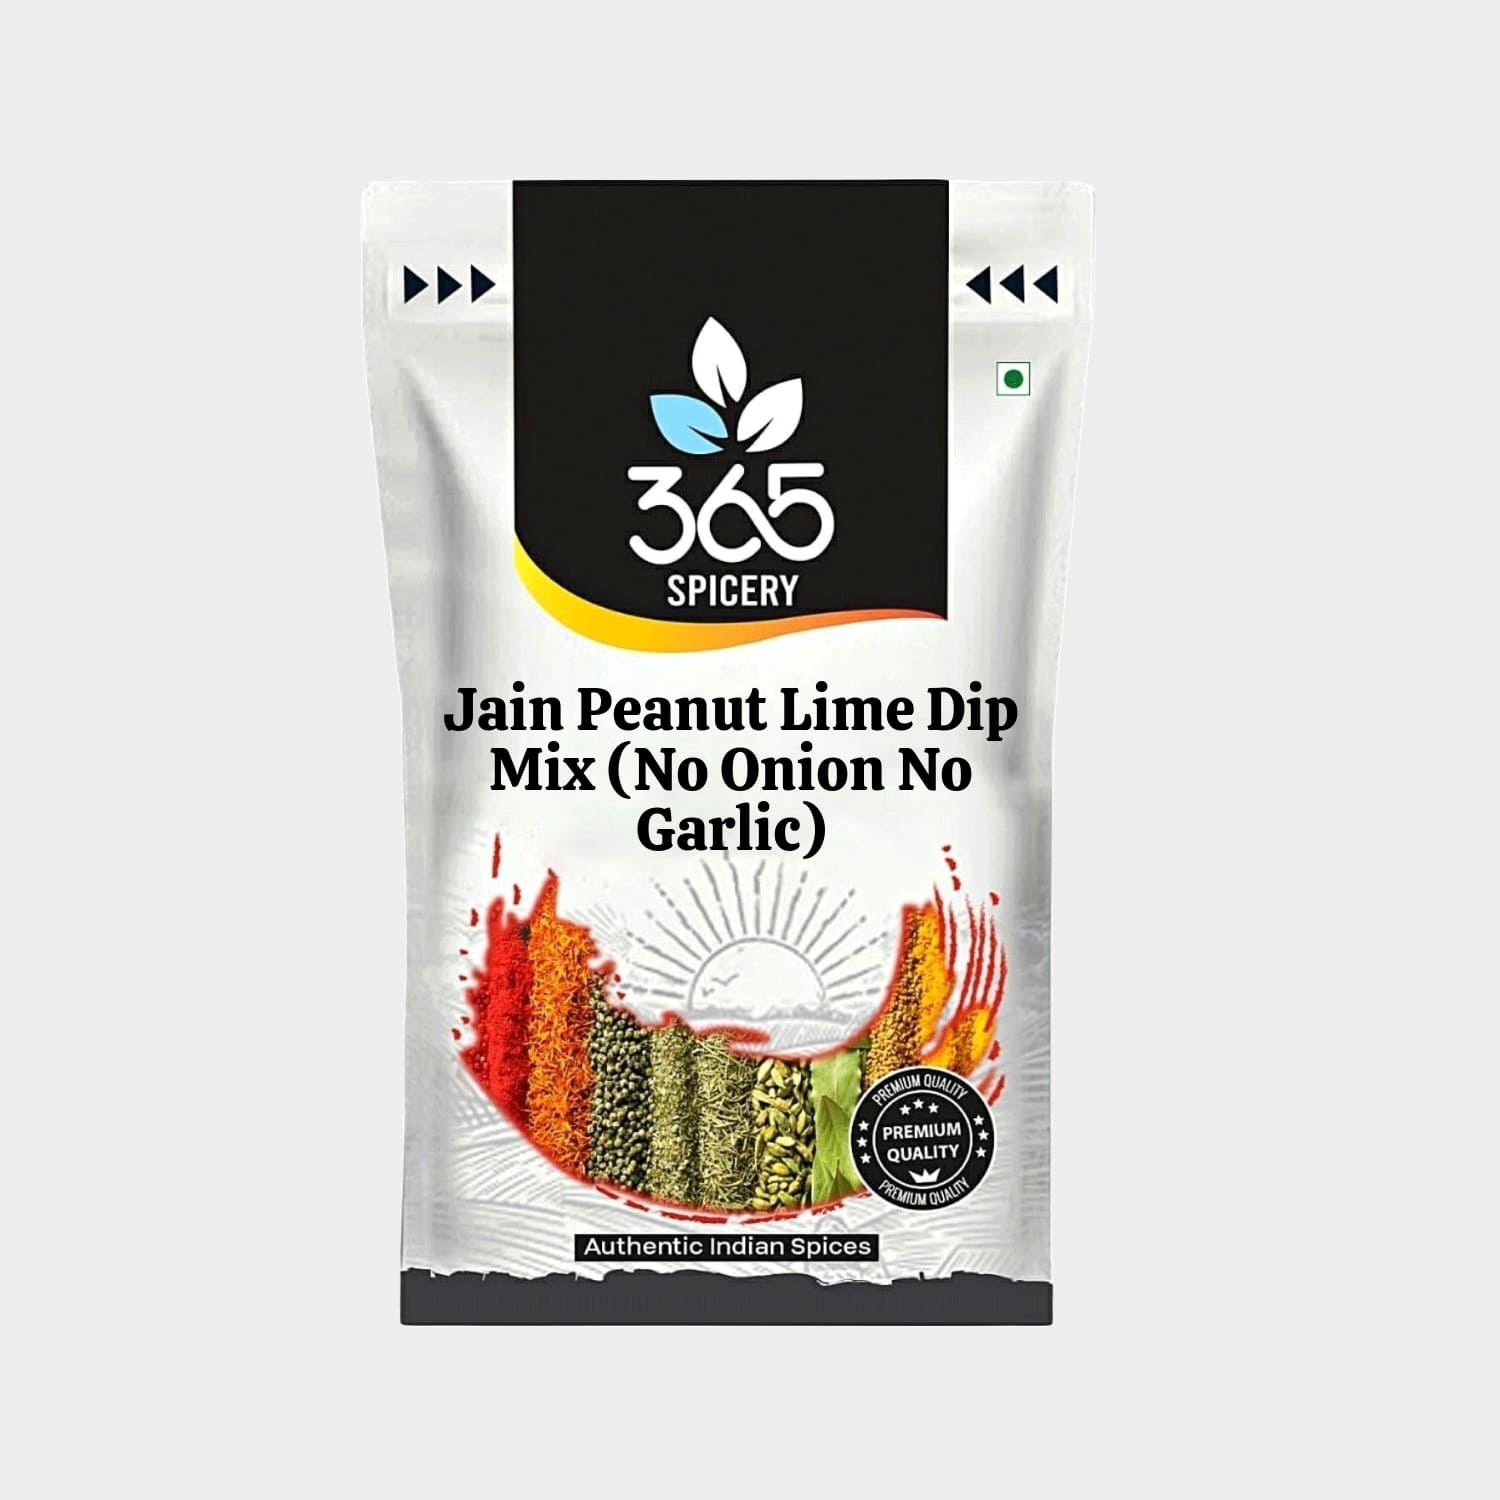 Jain Peanut Lime Dip Mix (No Onion No Garlic)